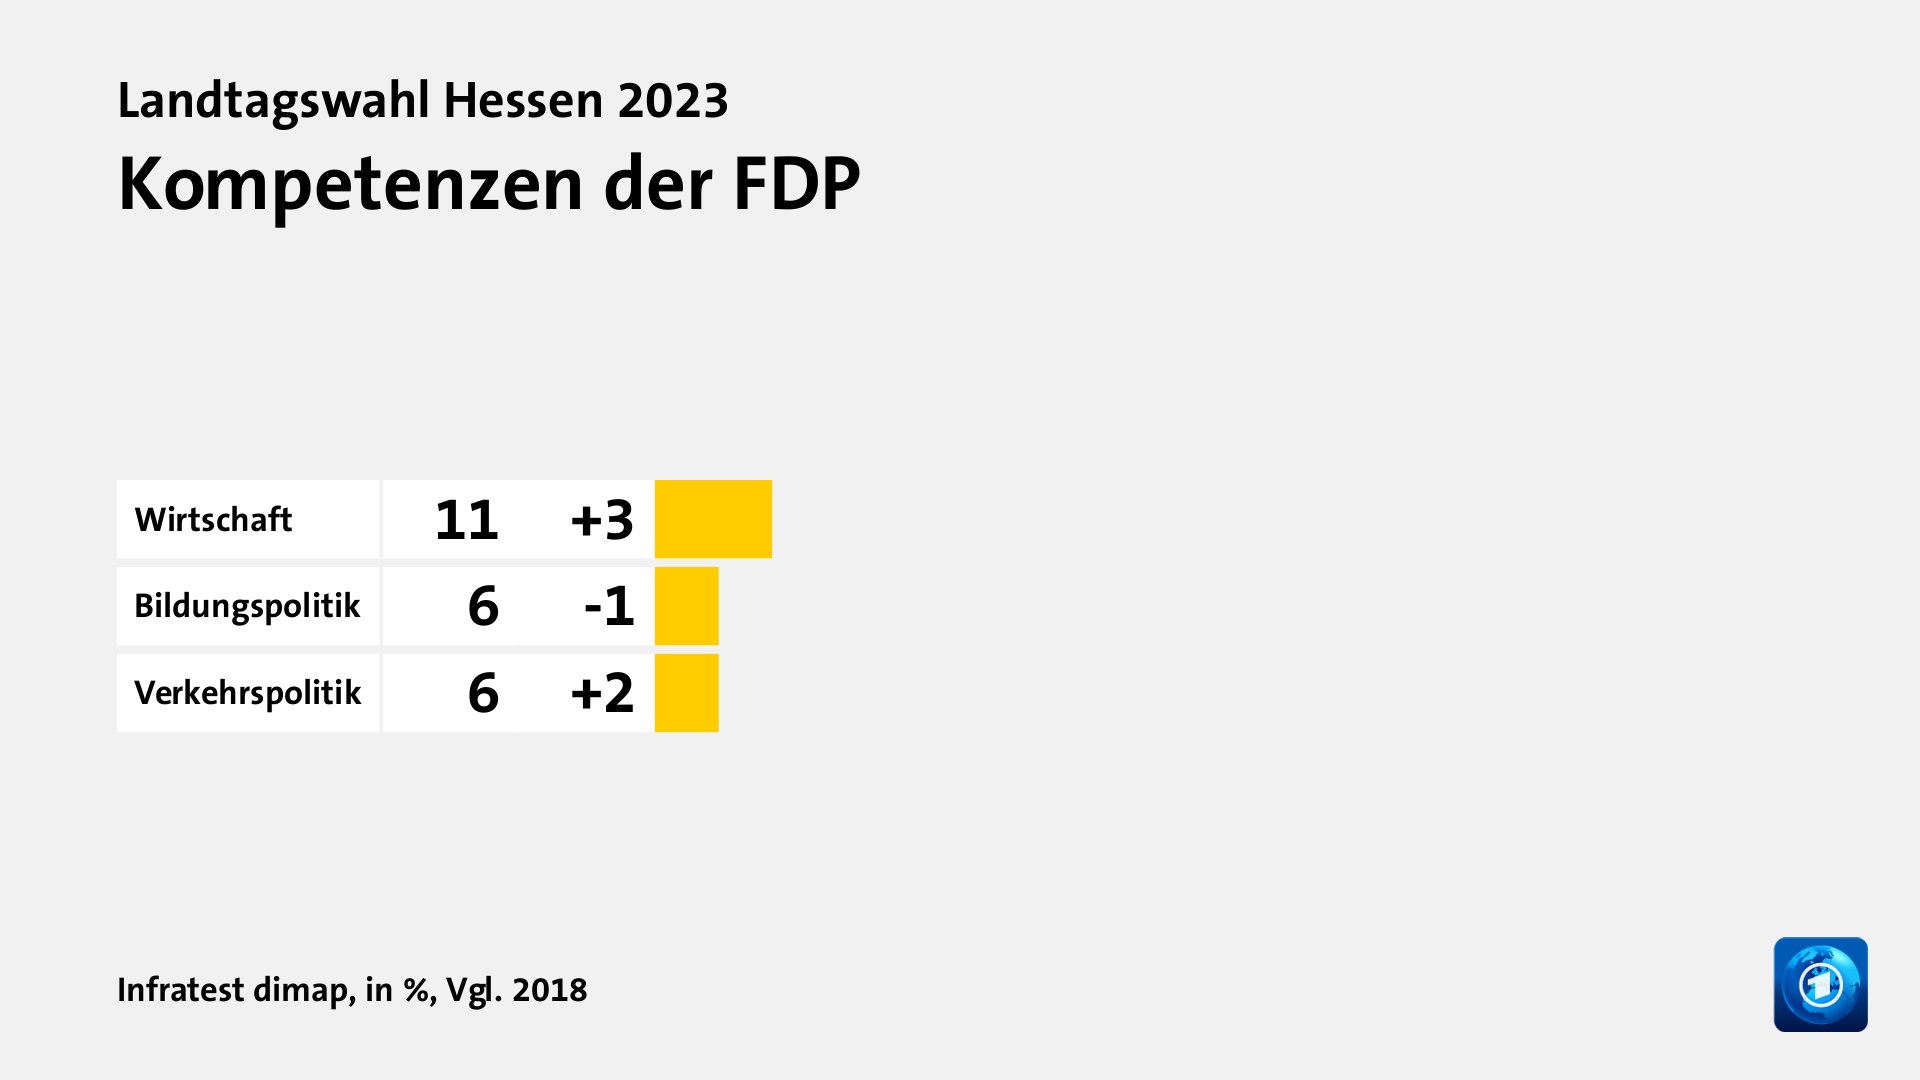 Kompetenzen der FDP, in %, Vgl. 2018: Wirtschaft 11, Bildungspolitik 6, Verkehrspolitik 6, Quelle: Infratest dimap